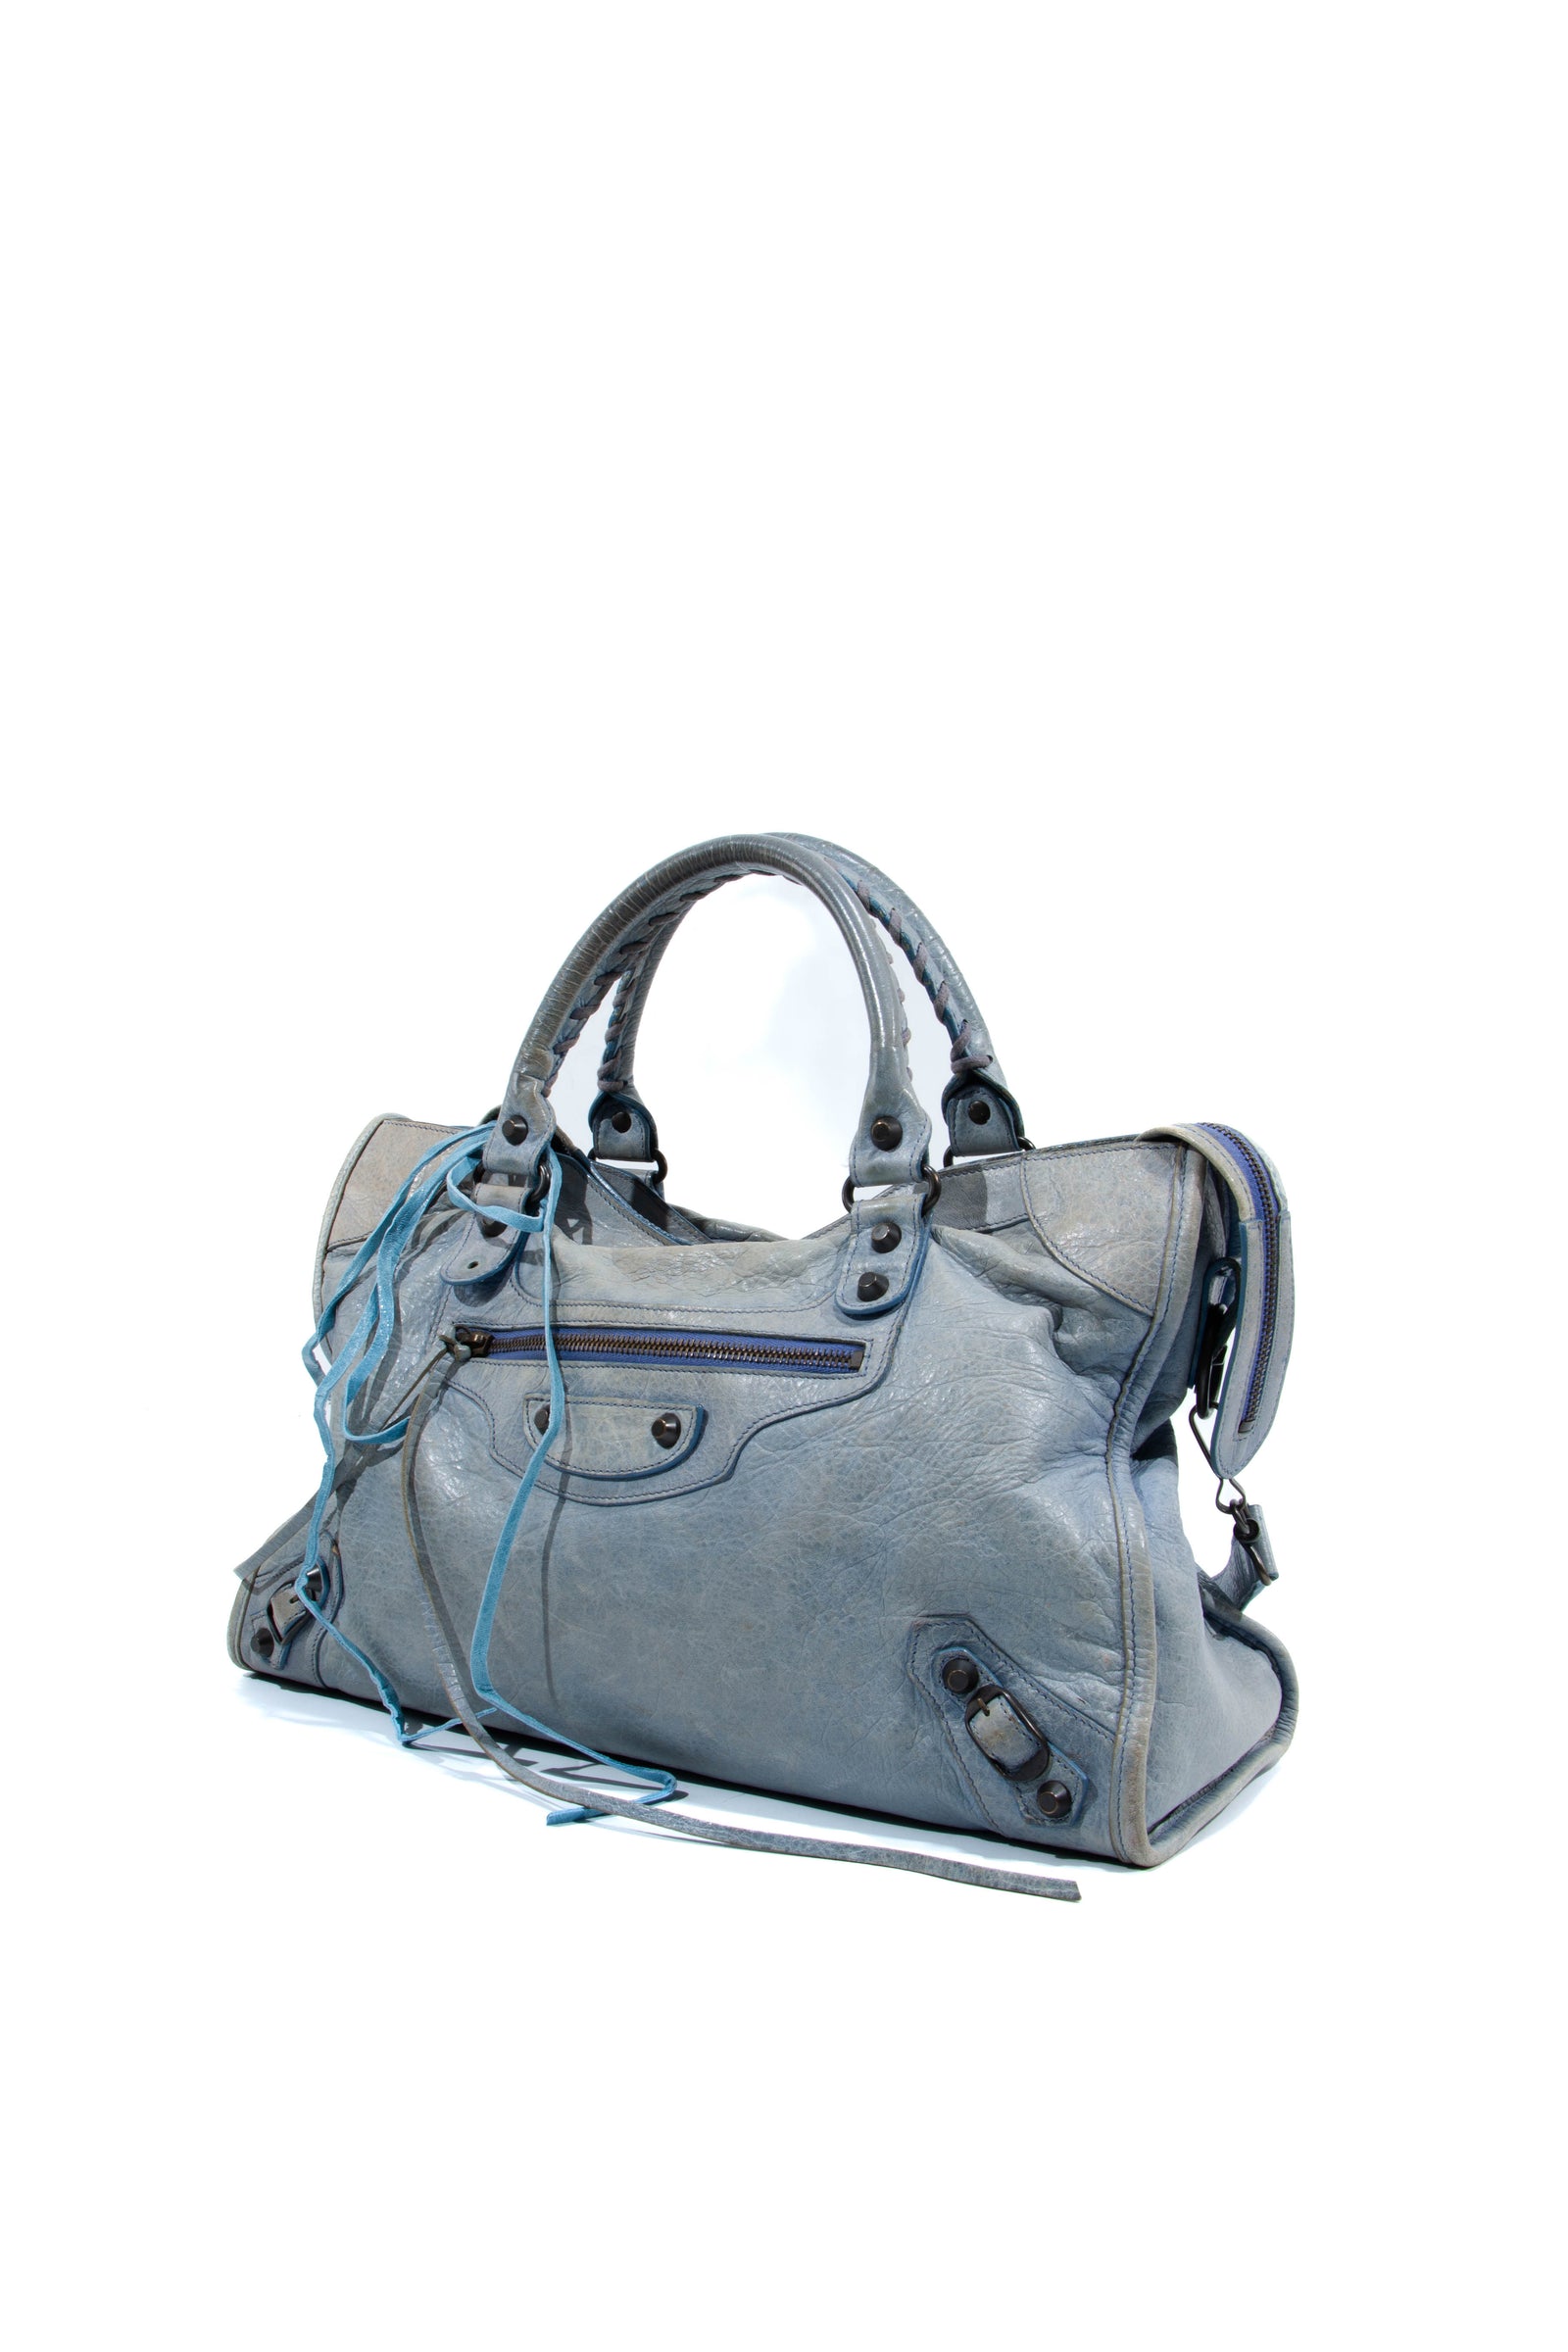 Louis Vuitton - Authenticated Nano Noé Handbag - Leather Blue Plain for Women, Good Condition